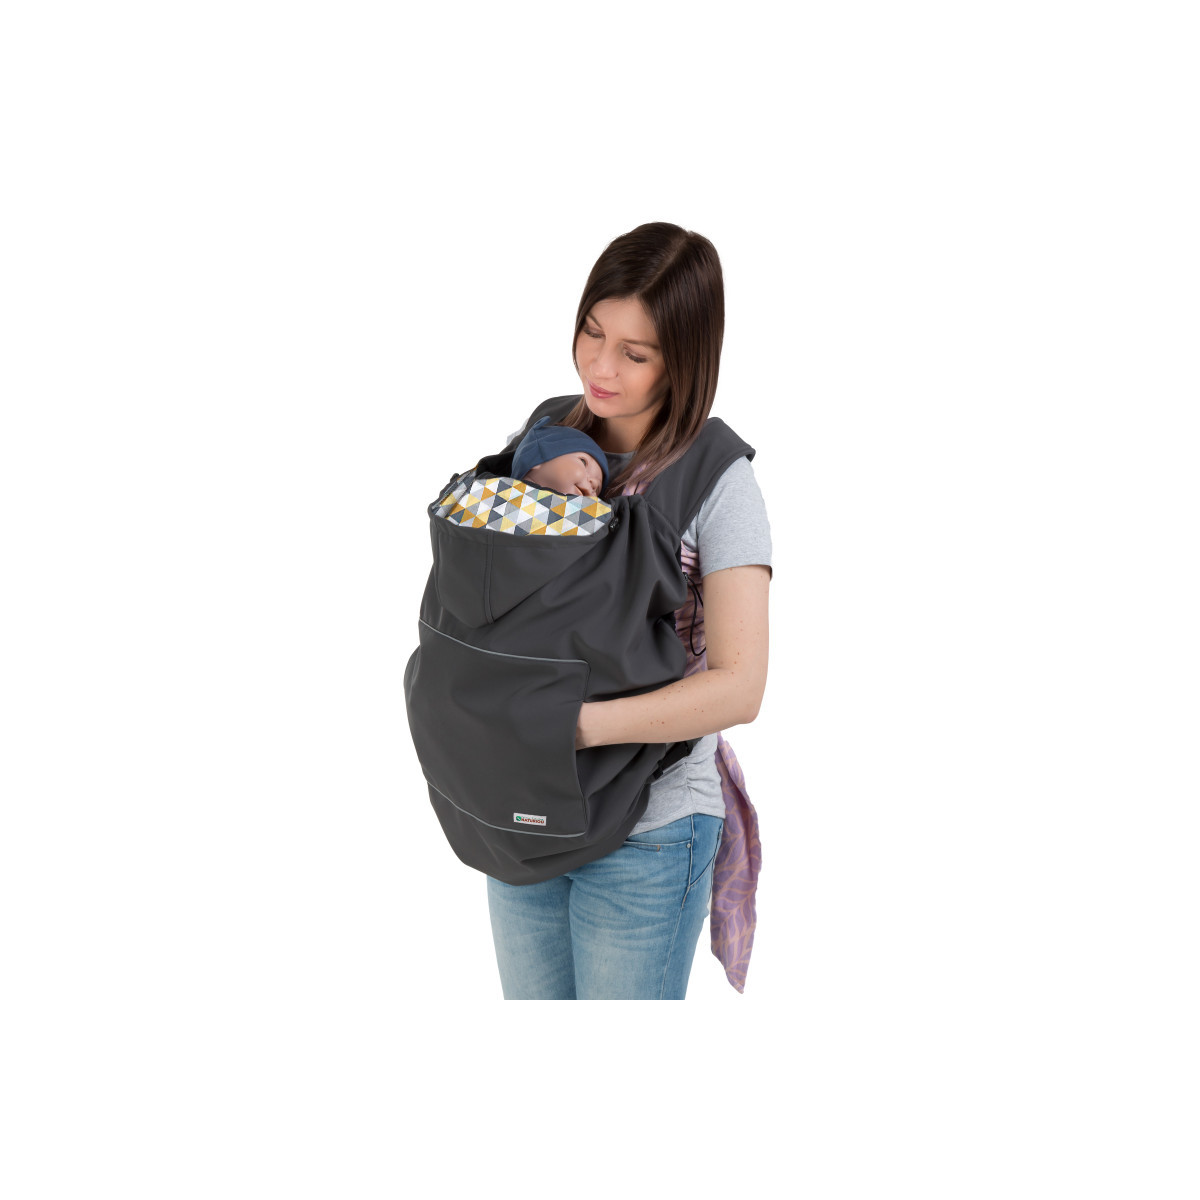 Les accessoires de portage indispensables pour porter bébé - Naturioù